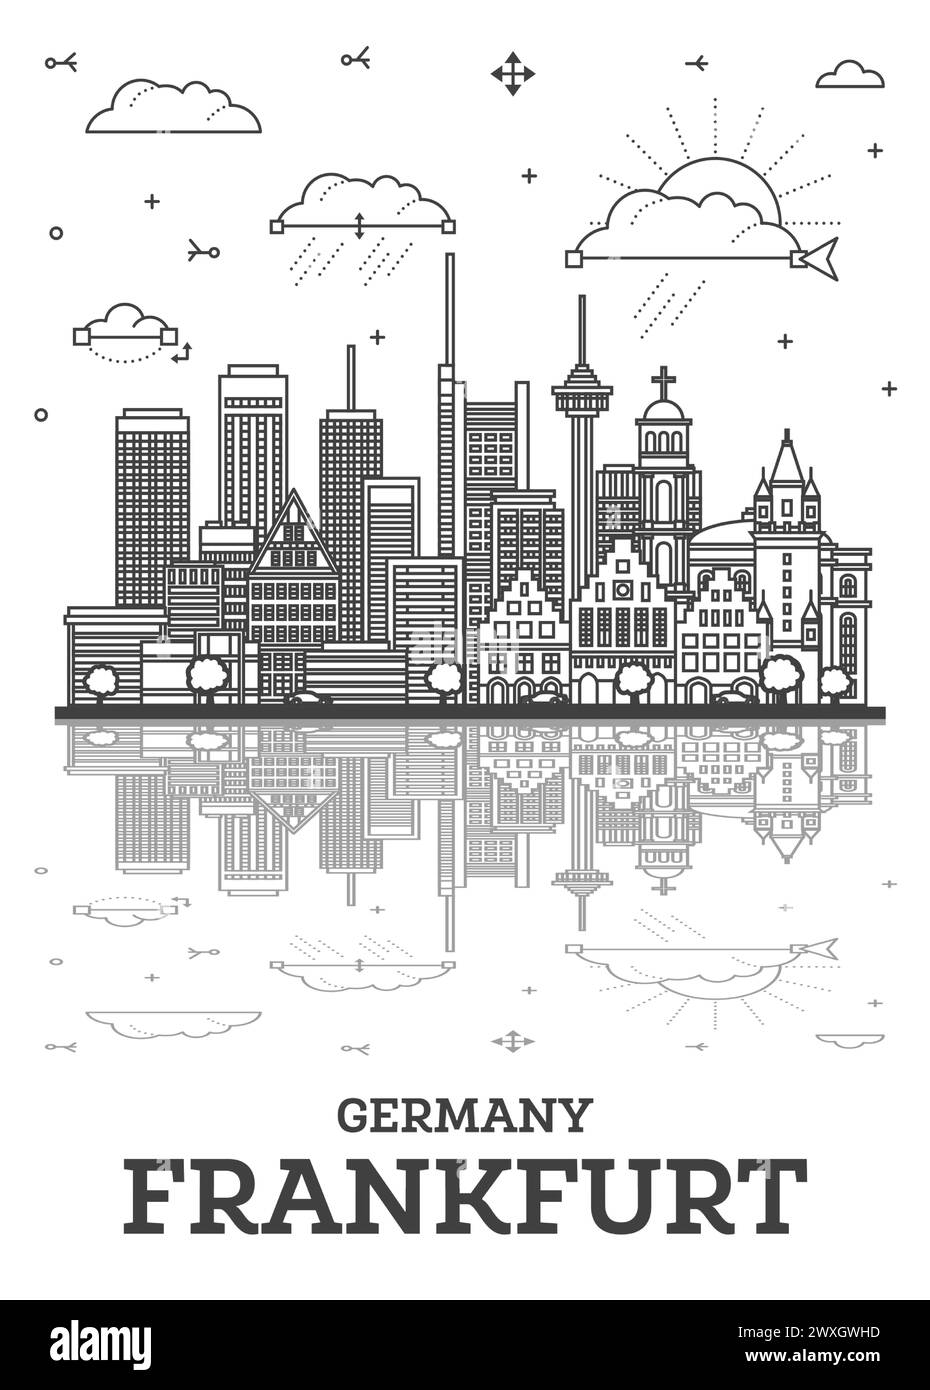 Umreißen Sie die Frankfurter Skyline mit modernen Gebäuden und Reflexionen, isoliert auf Weiß. Vektordarstellung. Frankfurter Stadtlandschaft mit Wahrzeichen Stock Vektor